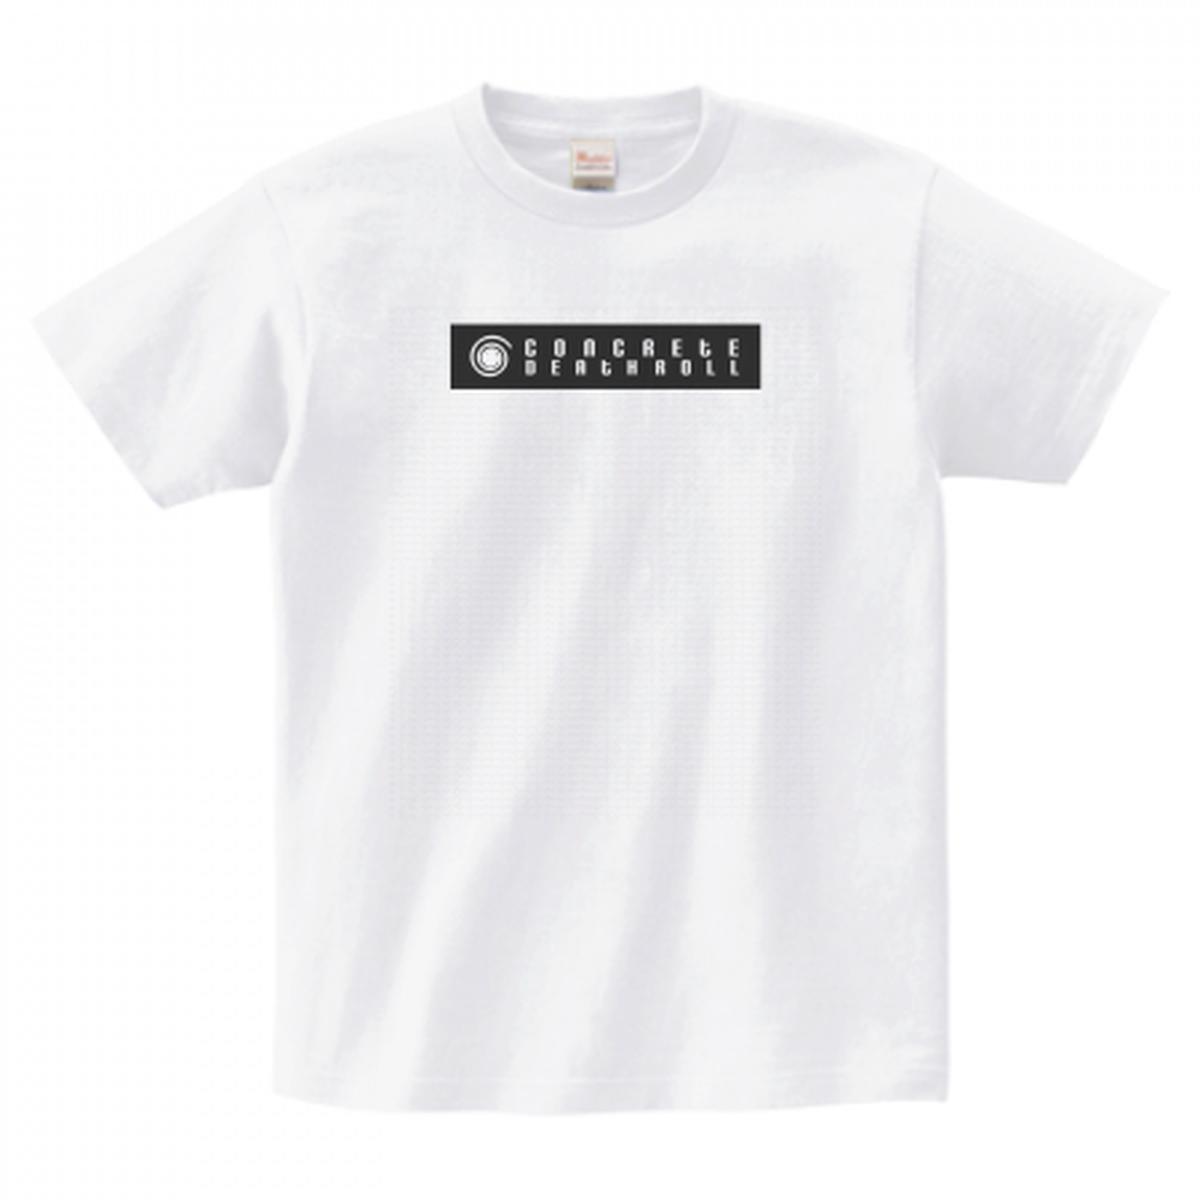 ブランドロゴtシャツ 送料無料 コンクリートデスロール 公式オンラインストア